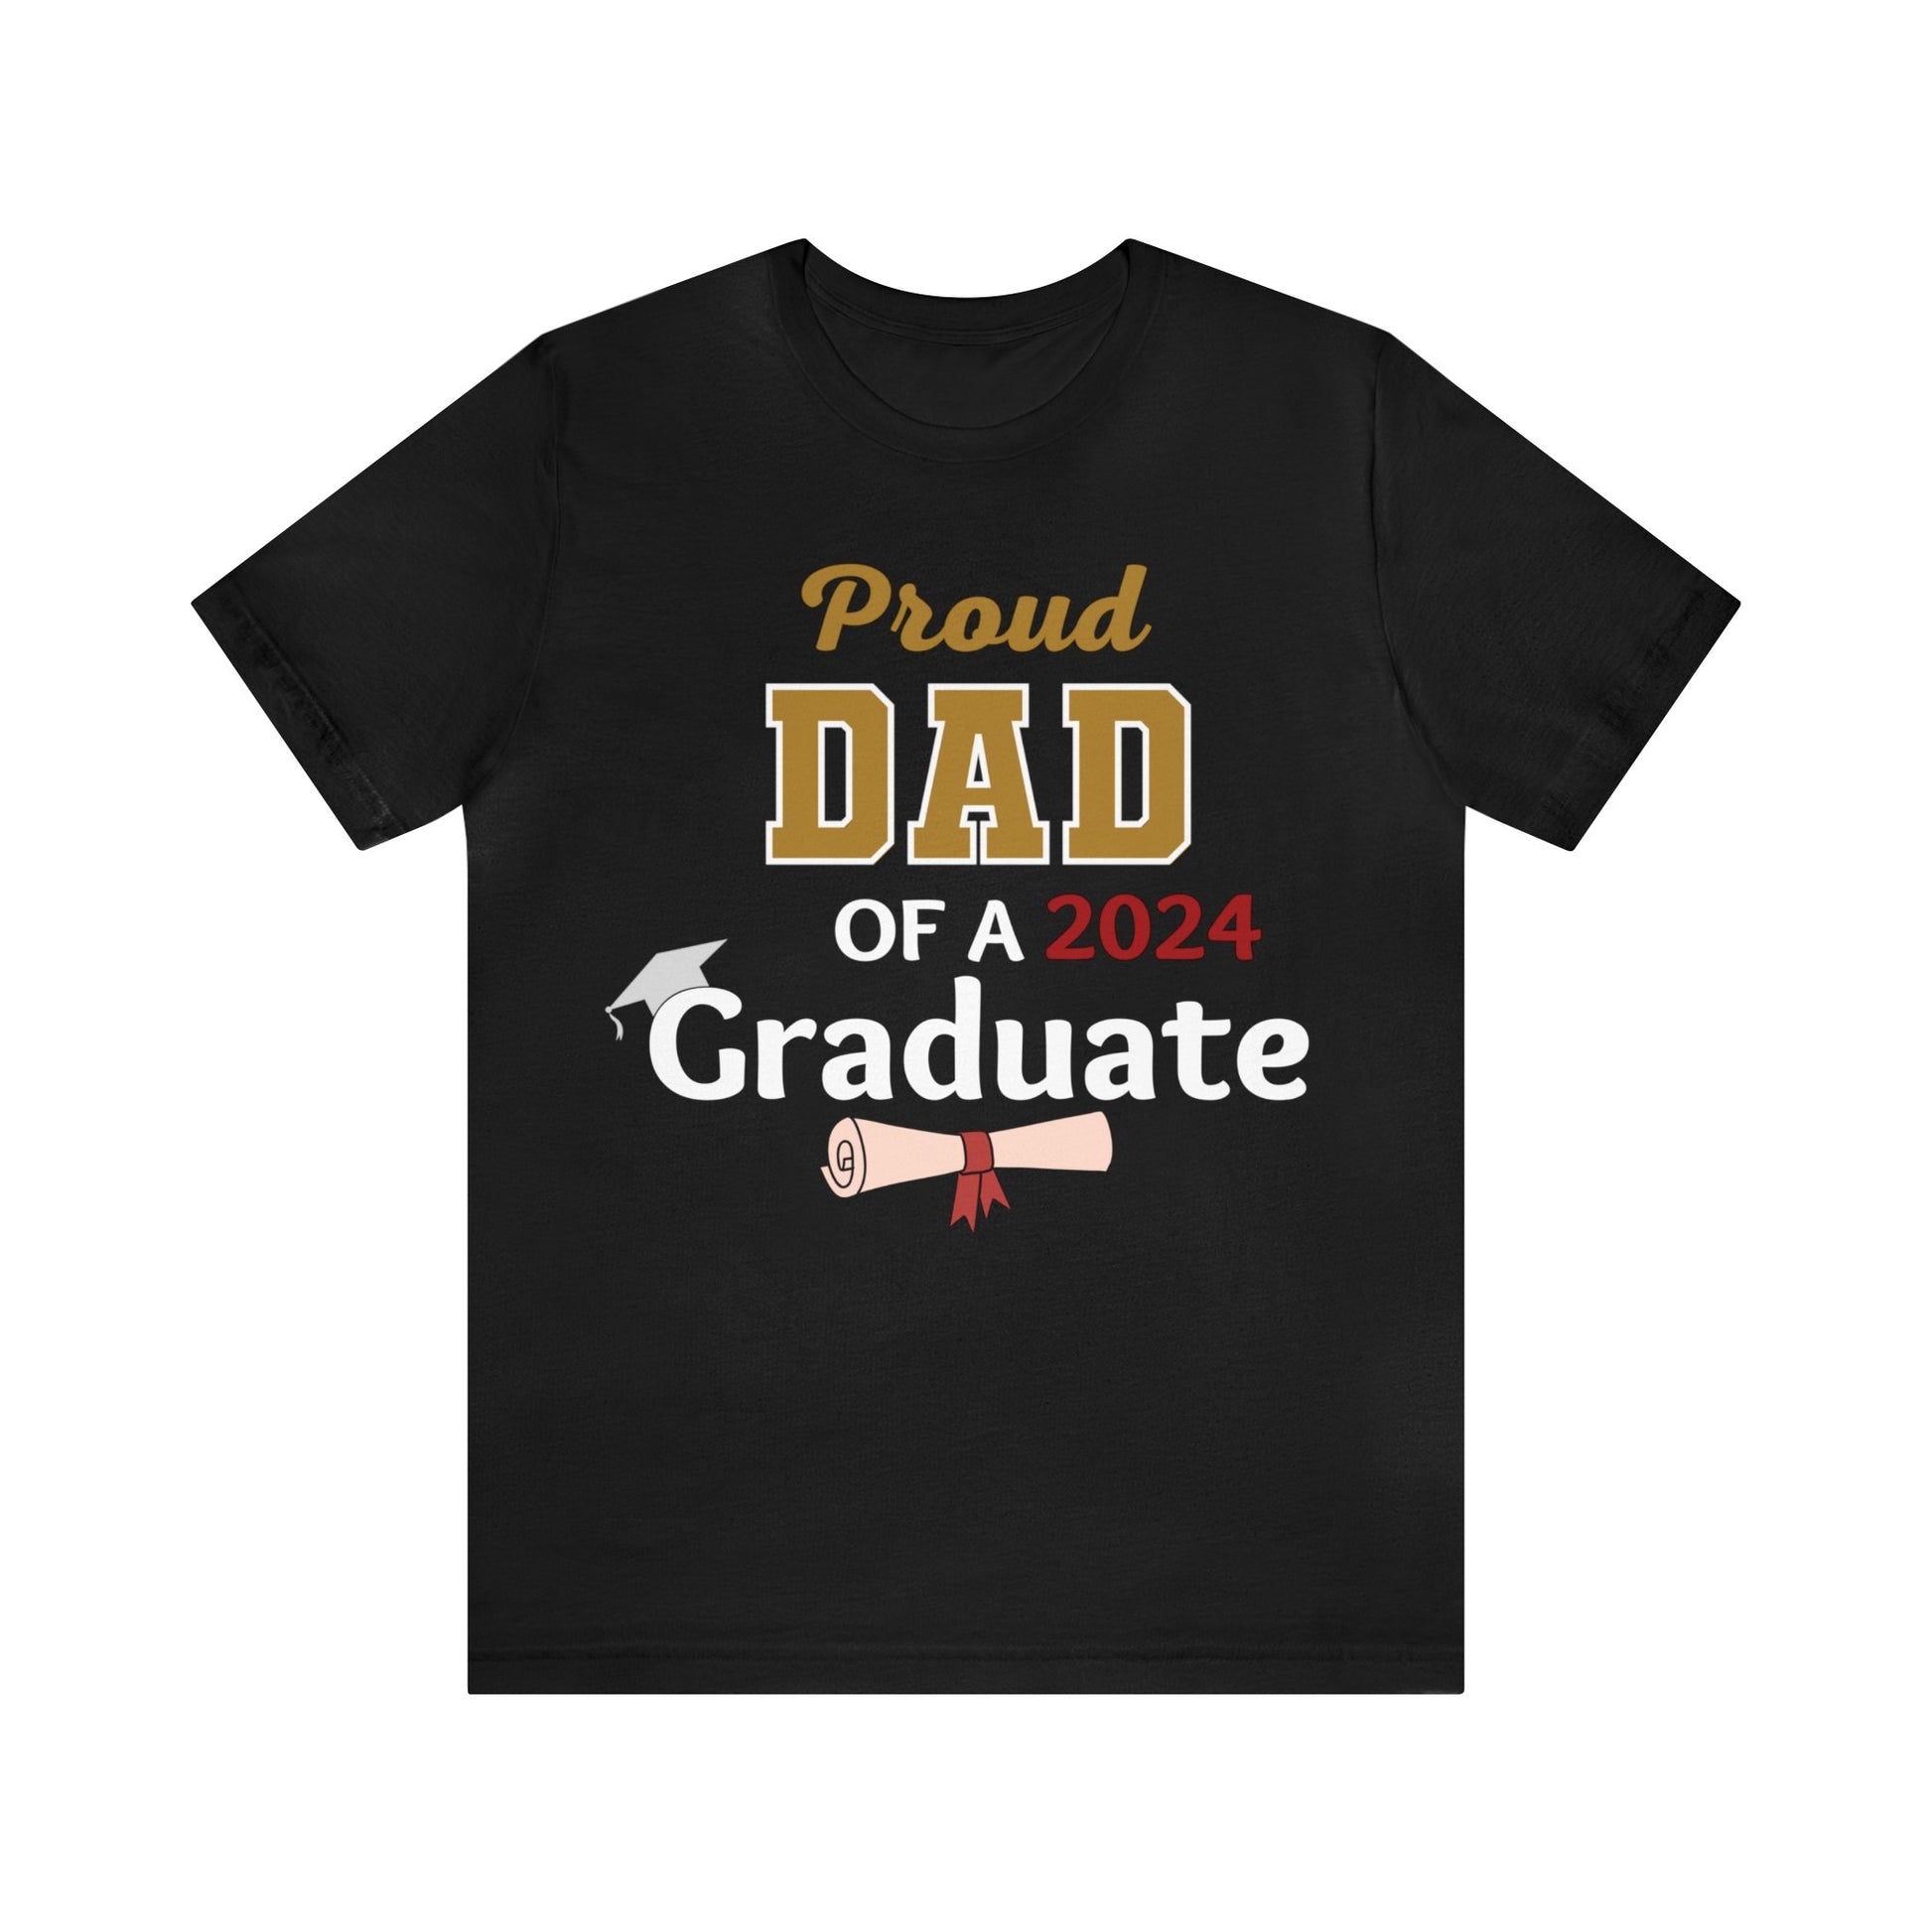 Proud Dad of 2024 Graduate Shirt - Graduation Shirt for Dad